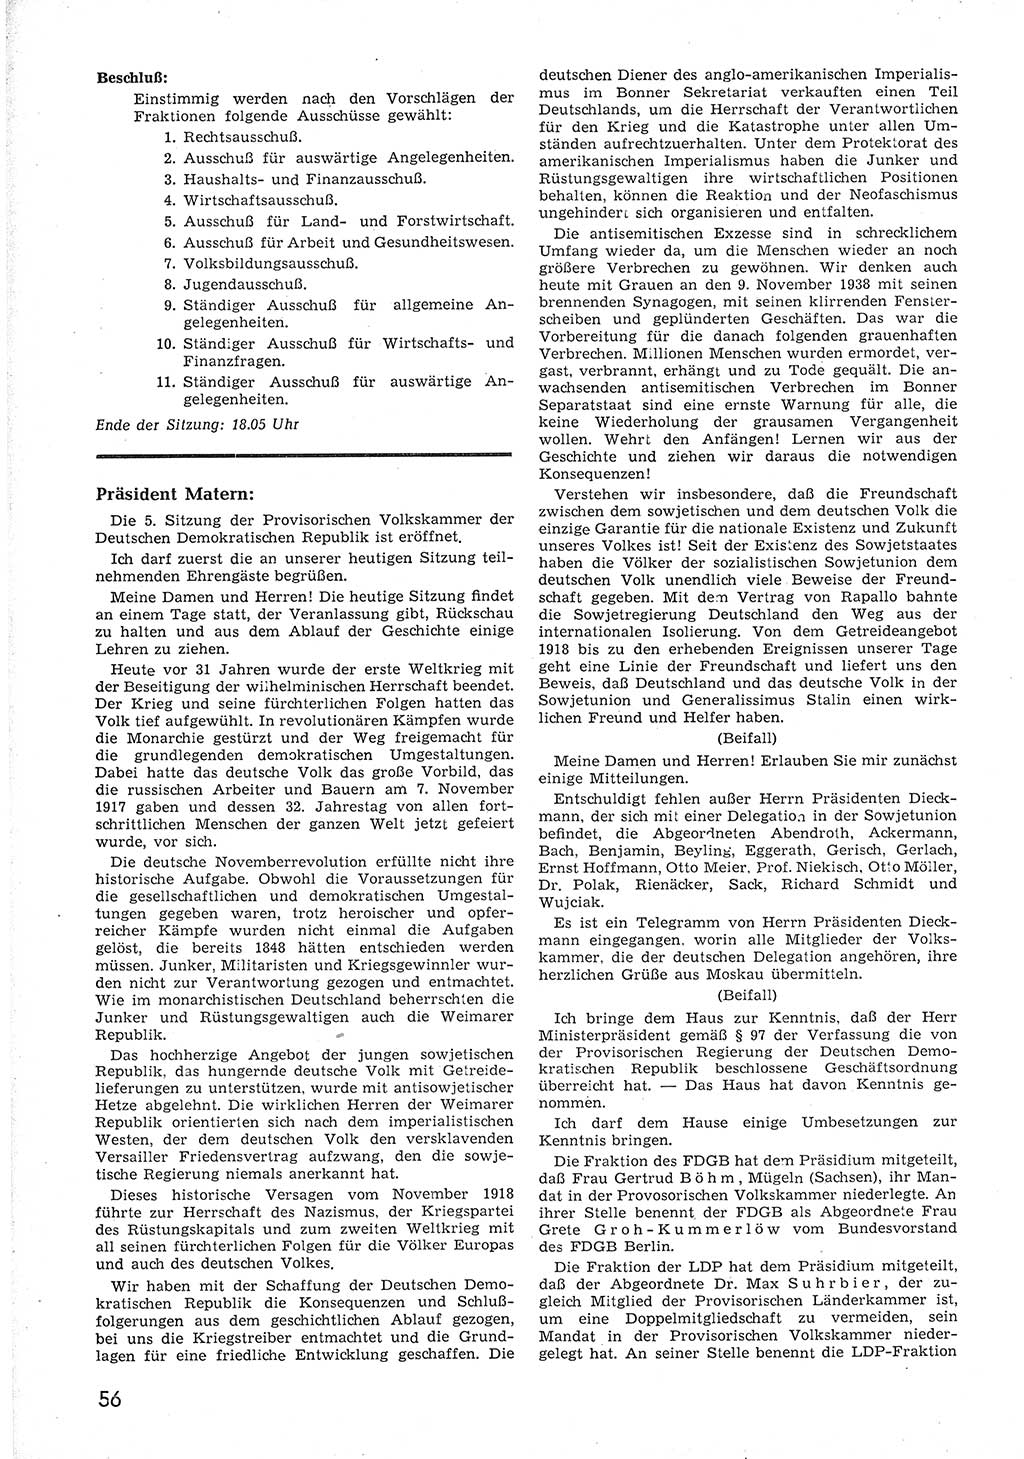 Provisorische Volkskammer (VK) der Deutschen Demokratischen Republik (DDR) 1949-1950, Dokument 68 (Prov. VK DDR 1949-1950, Dok. 68)